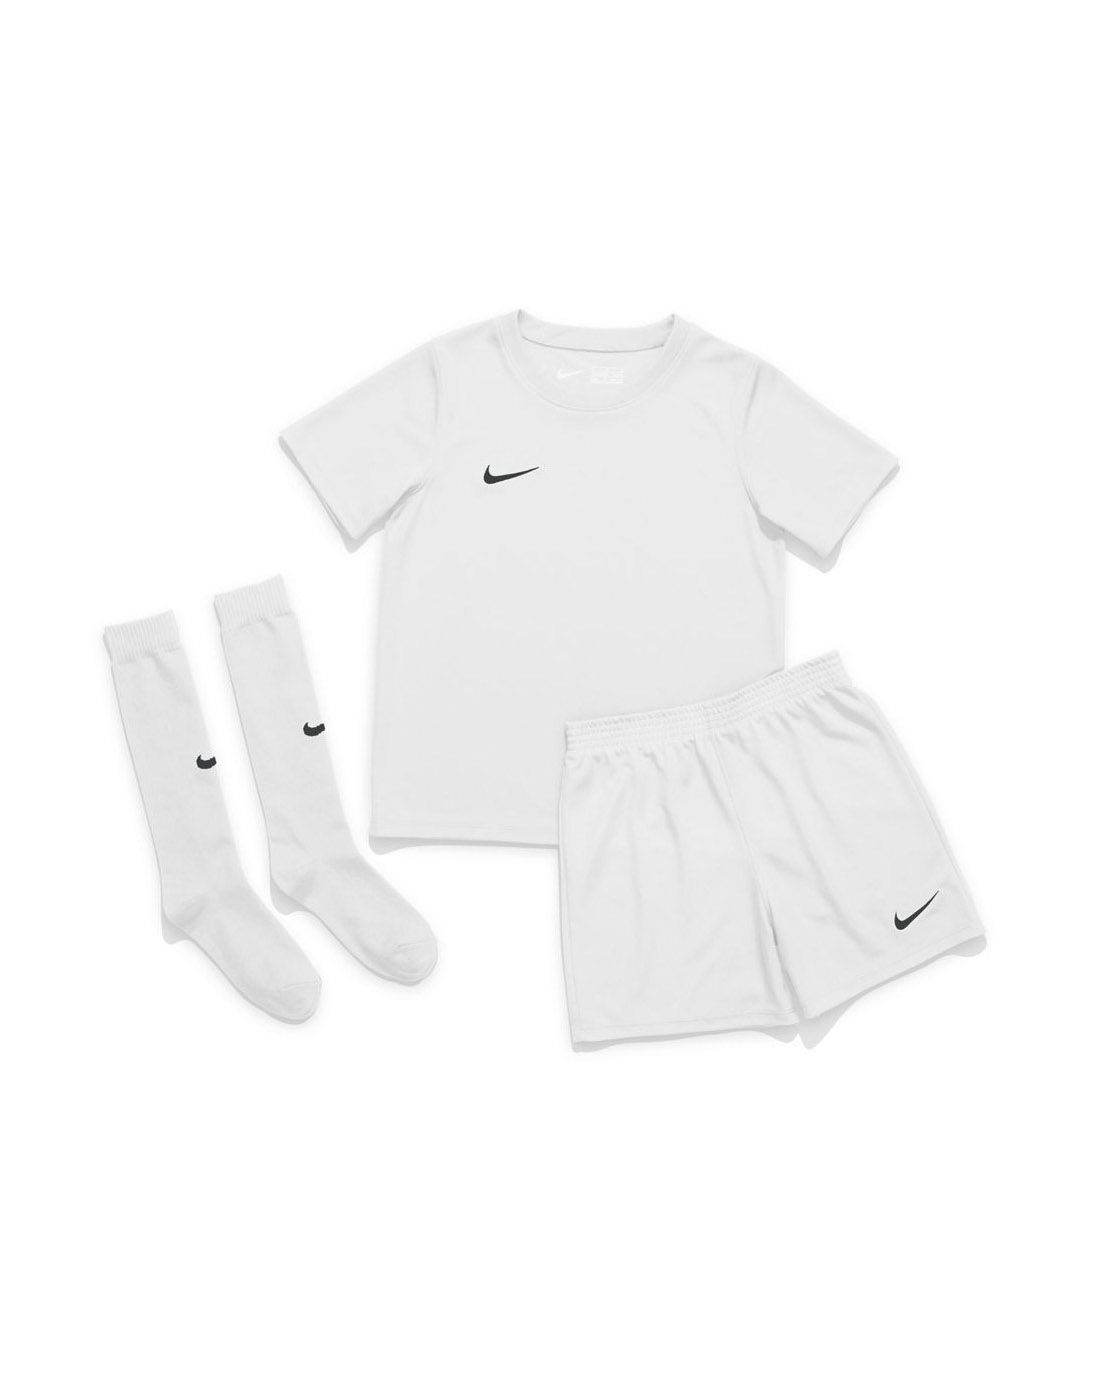 Tenues de Foot pour Enfant. Nike FR